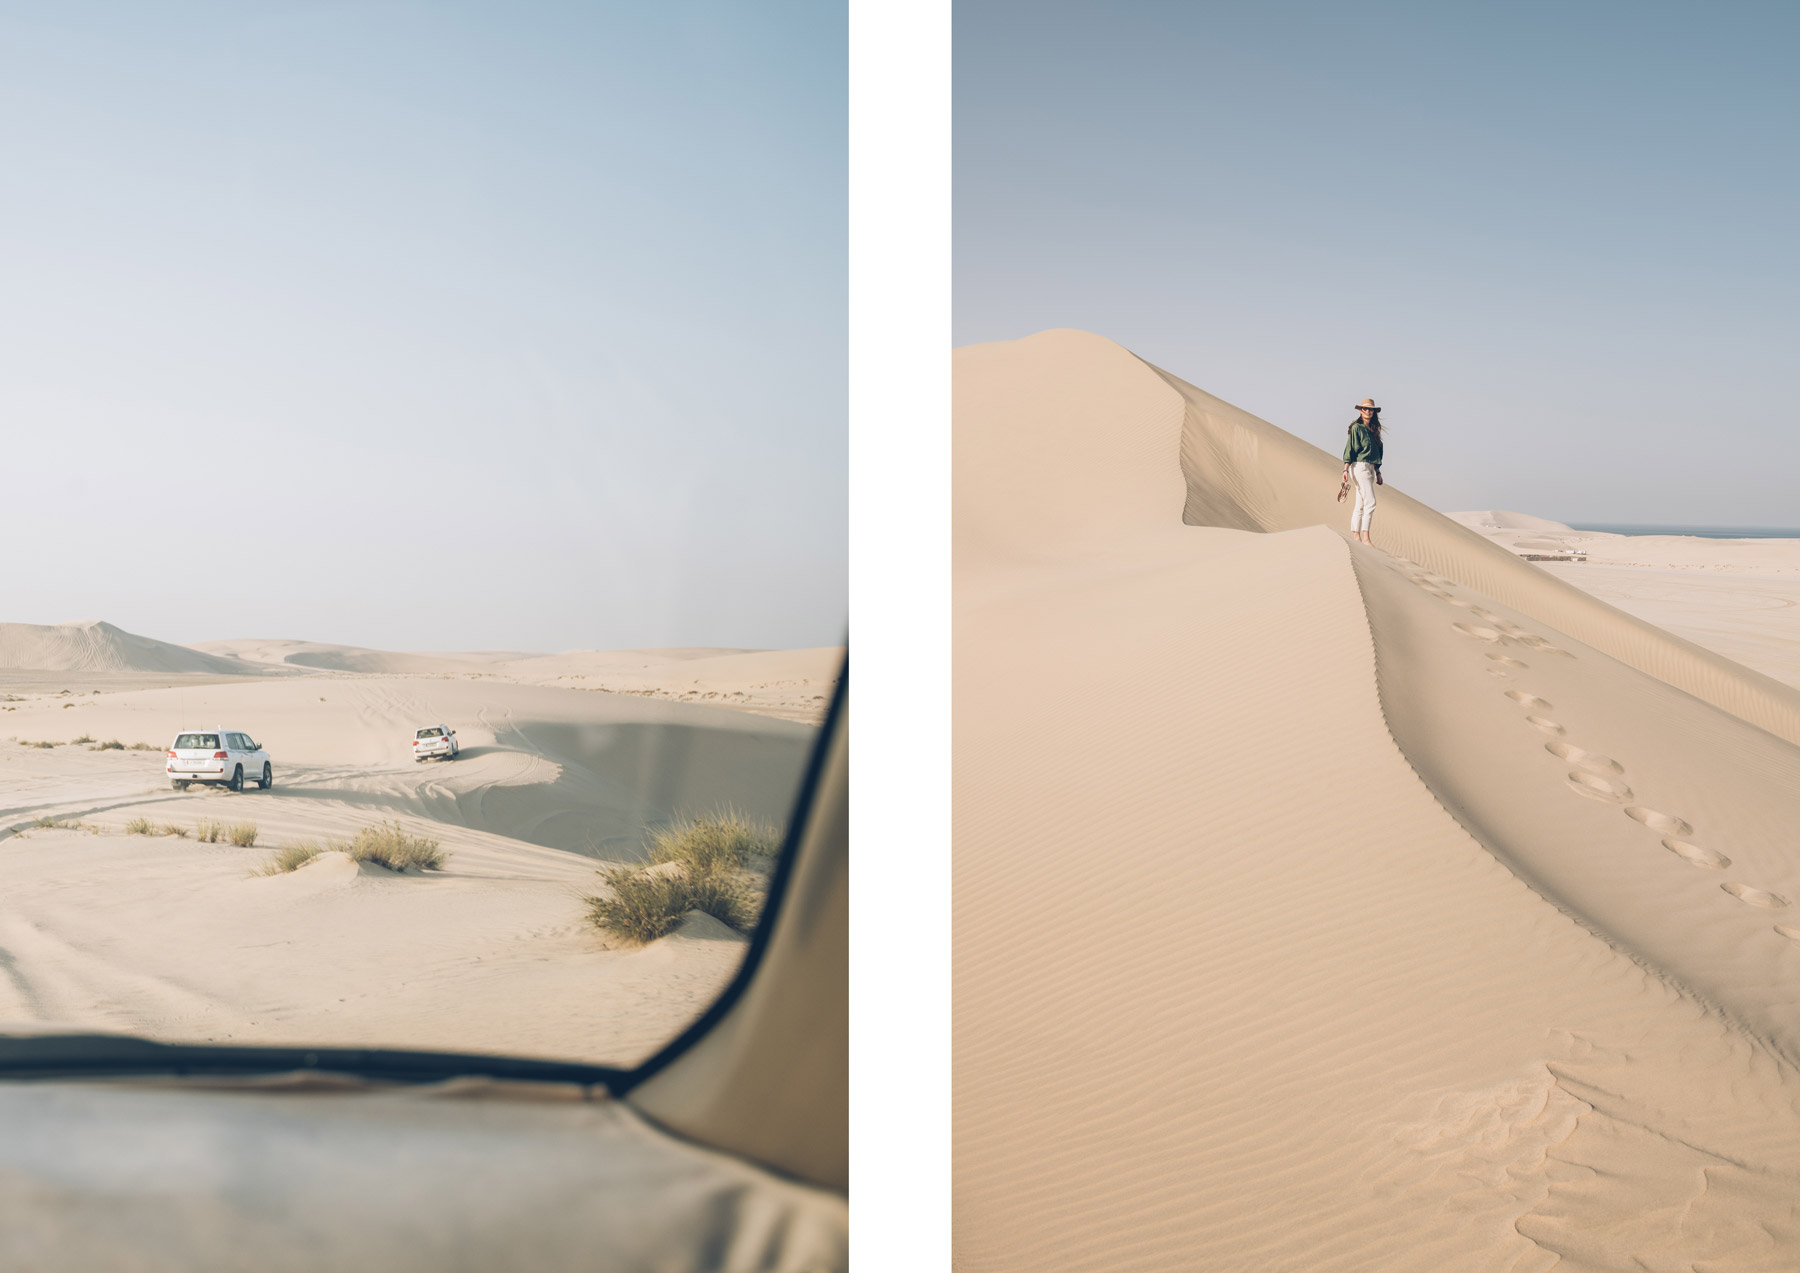 Dune de sable au Qatar